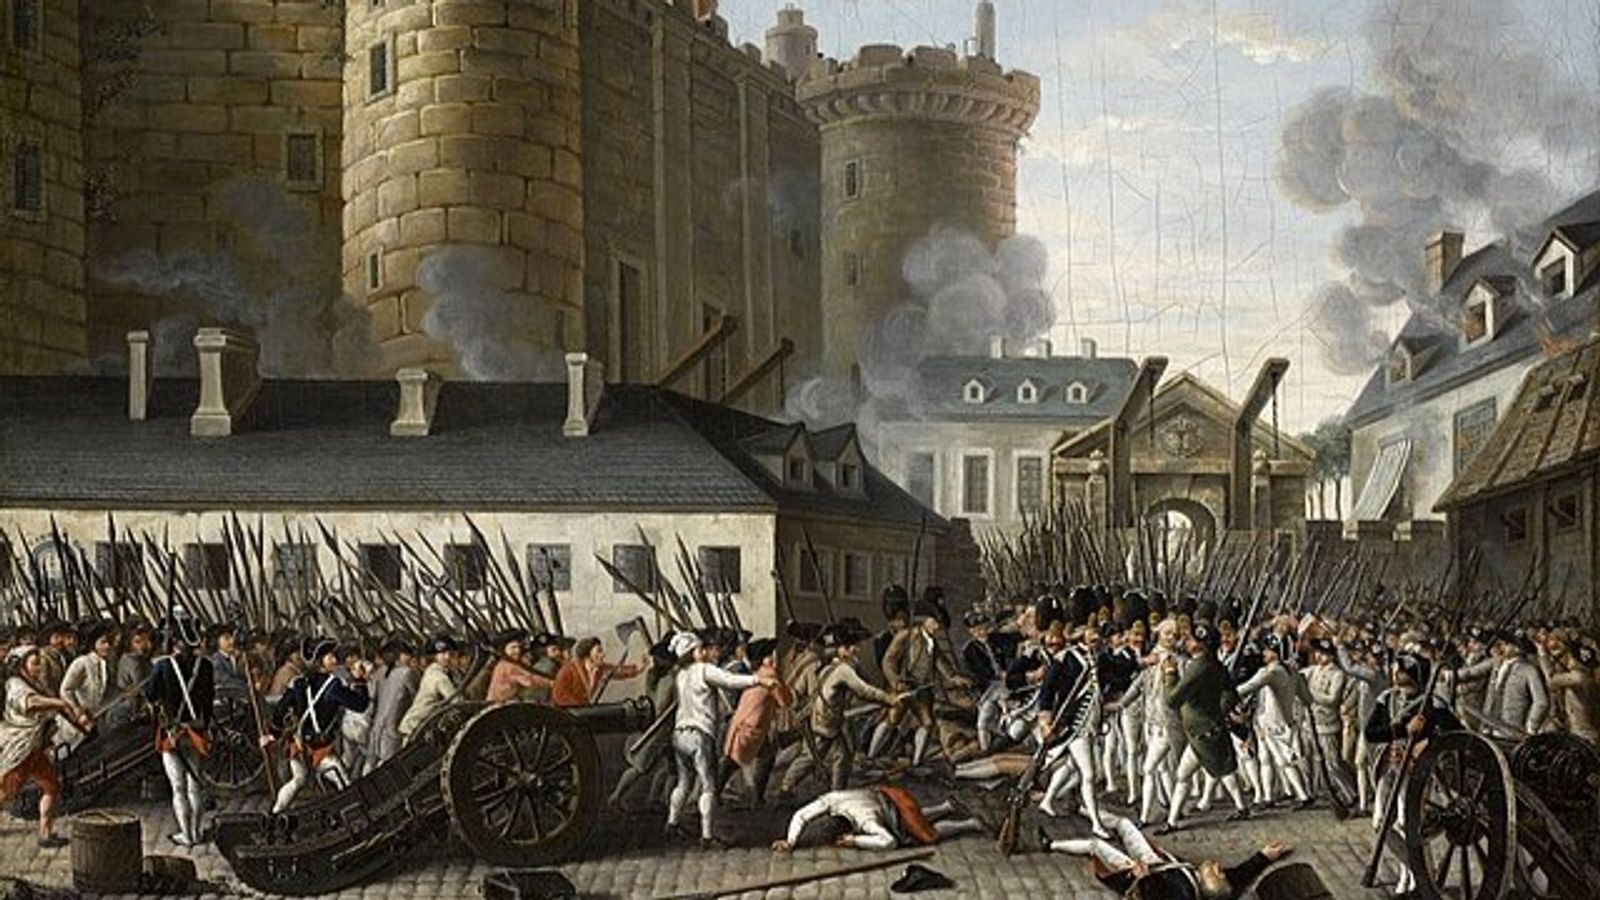 Великая французская революция конца 18 века. Французская революция 1789. Французская революция взятие Бастилии 1789. Штурм Бастилии 14 июля 1789 года. Бастилия французская революция.